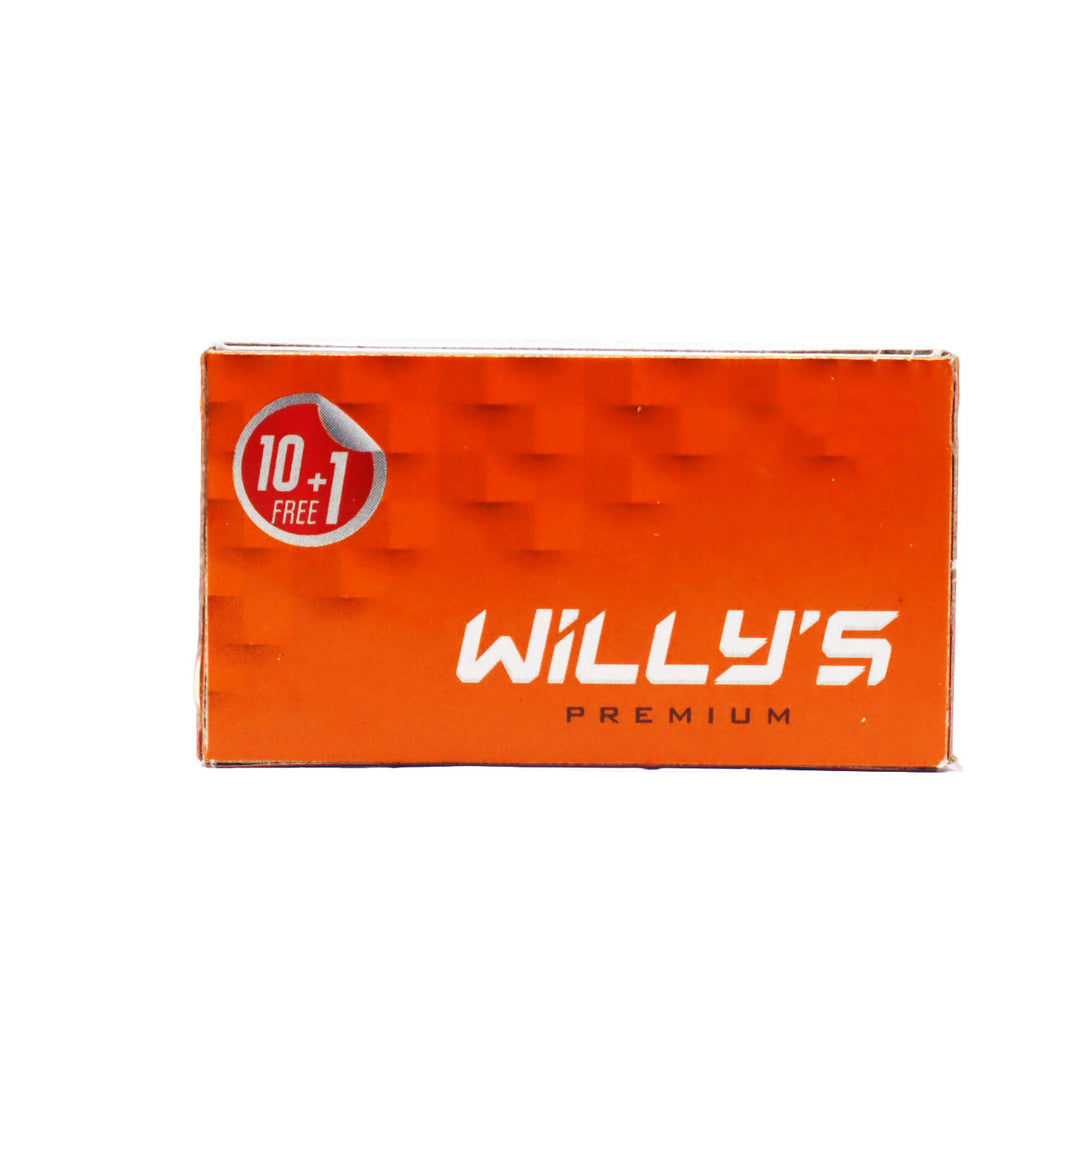 

Willy's Premium Men's Razor Blade Box of 10 pieces